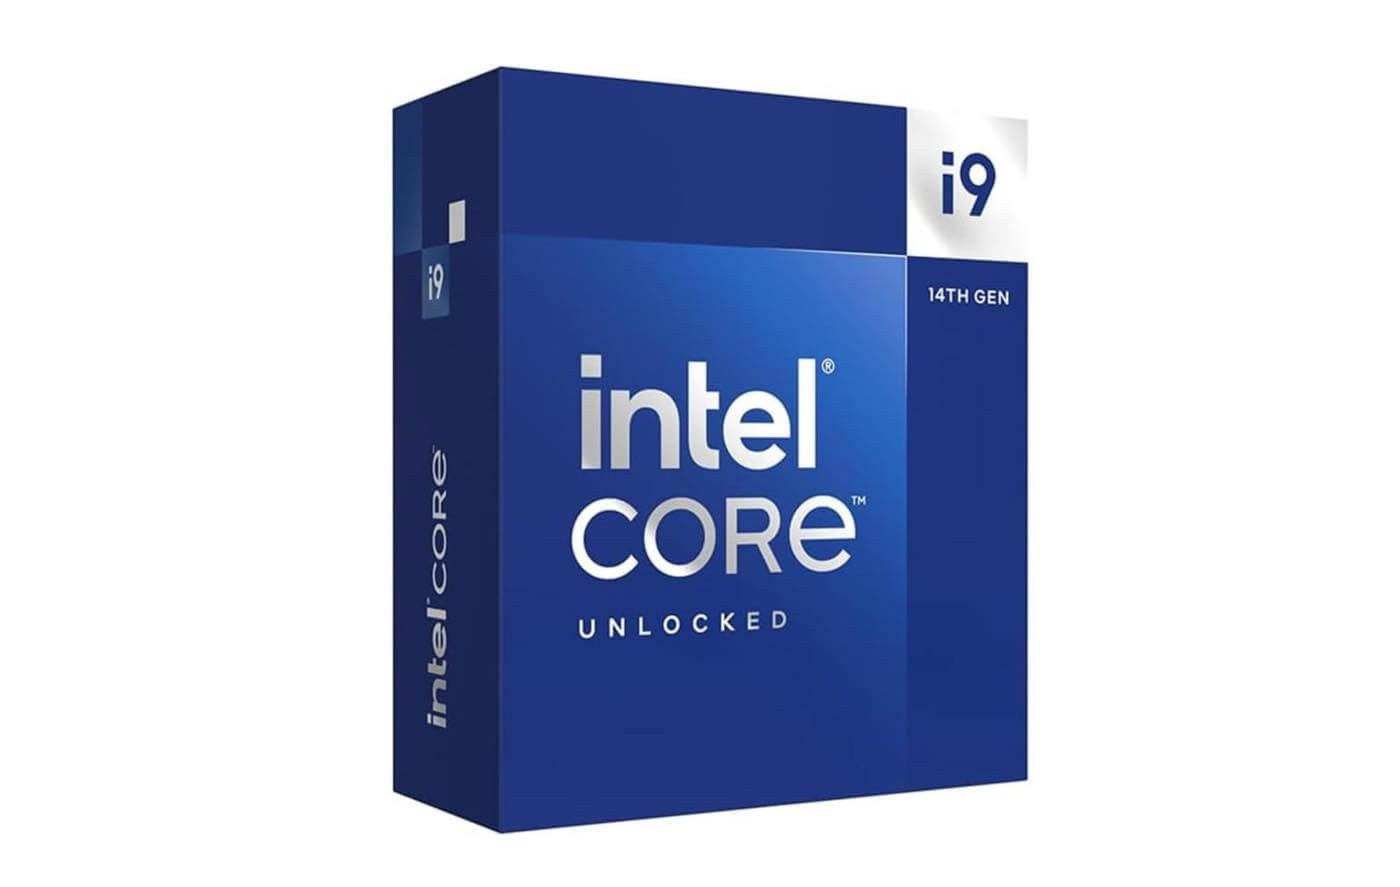 ｢Intel Core i9-13900K/14900K｣を搭載したPCで多数のゲームが頻繁にクラッシュする問題が発生中 ｰ Intelは調査中